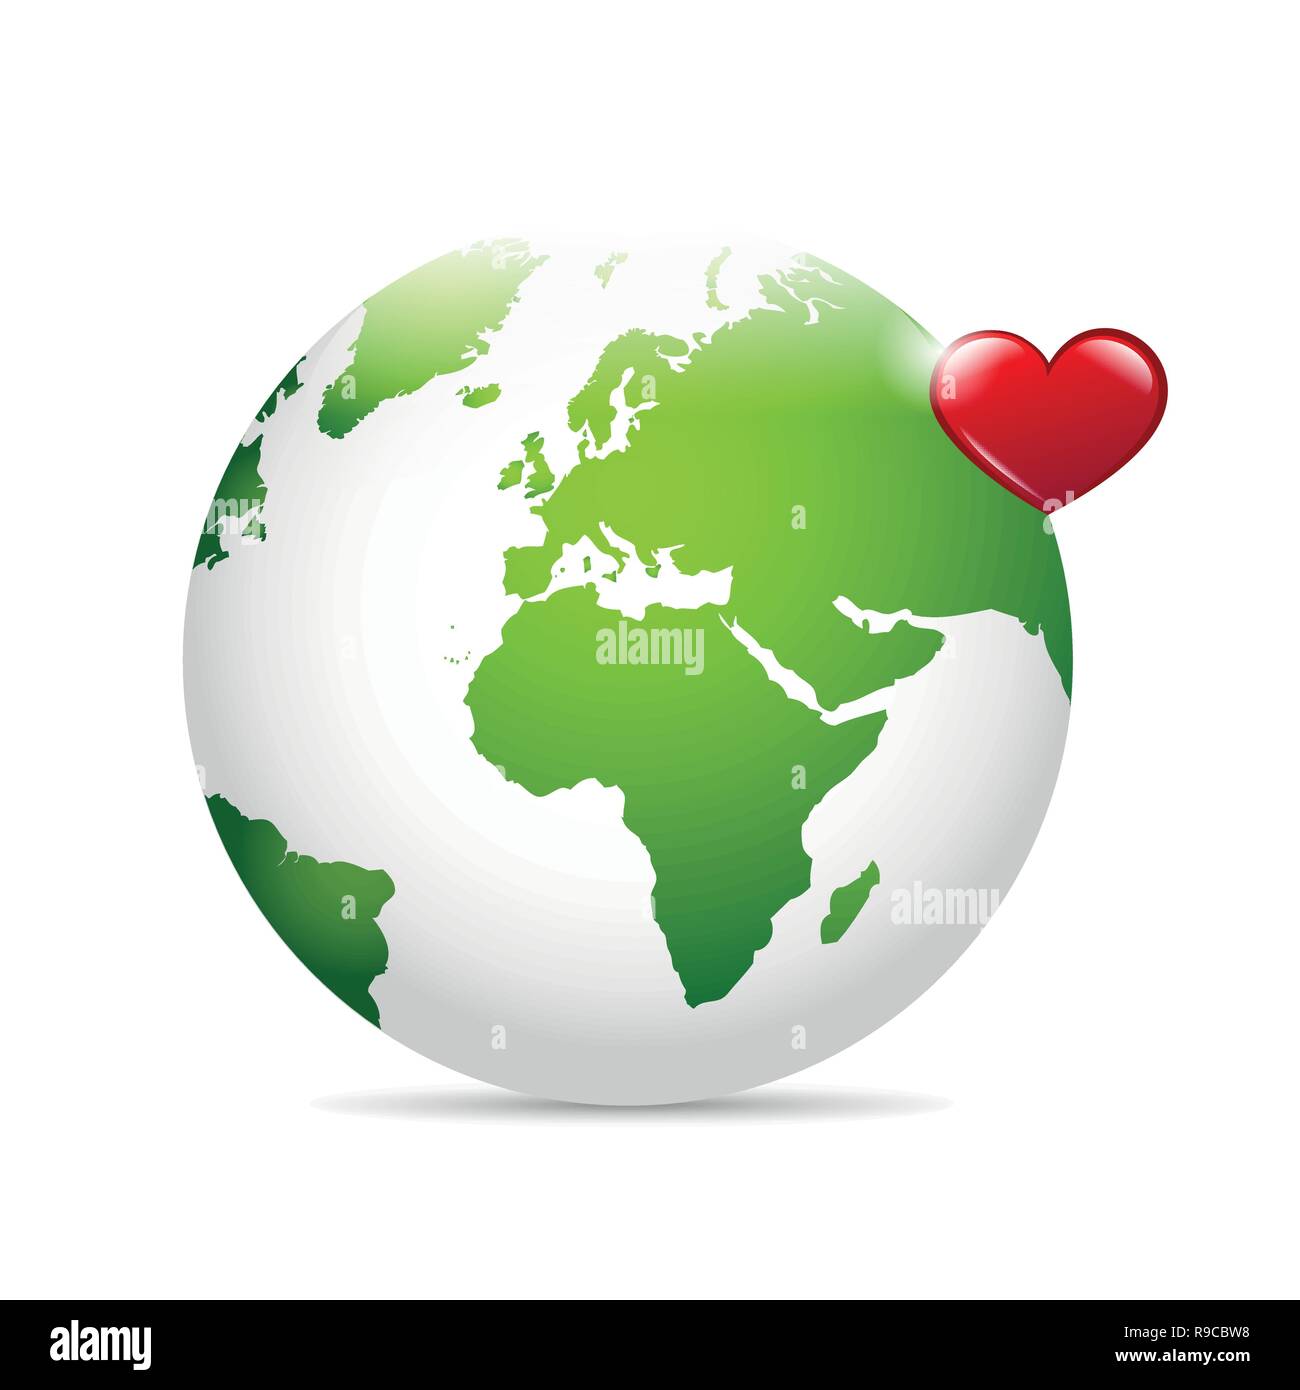 Grüne Erde mit roten Herzen die Welt retten Konzept Vektor-illustration EPS 10. Stock Vektor